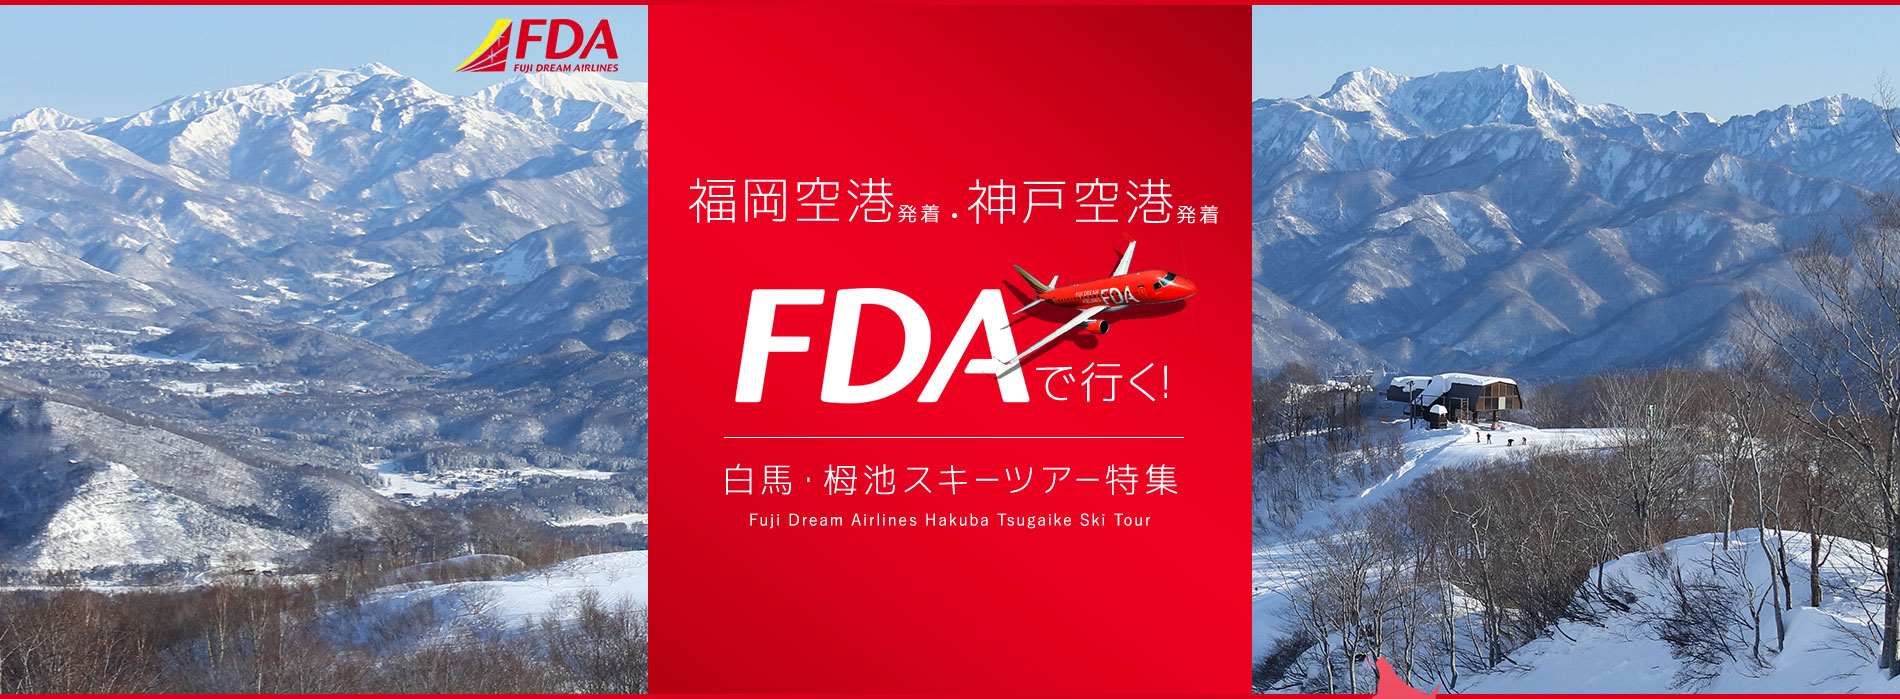 福岡空港発着・神戸空港発着 FDA で行く！ 白馬・栂池スキーツアー特集